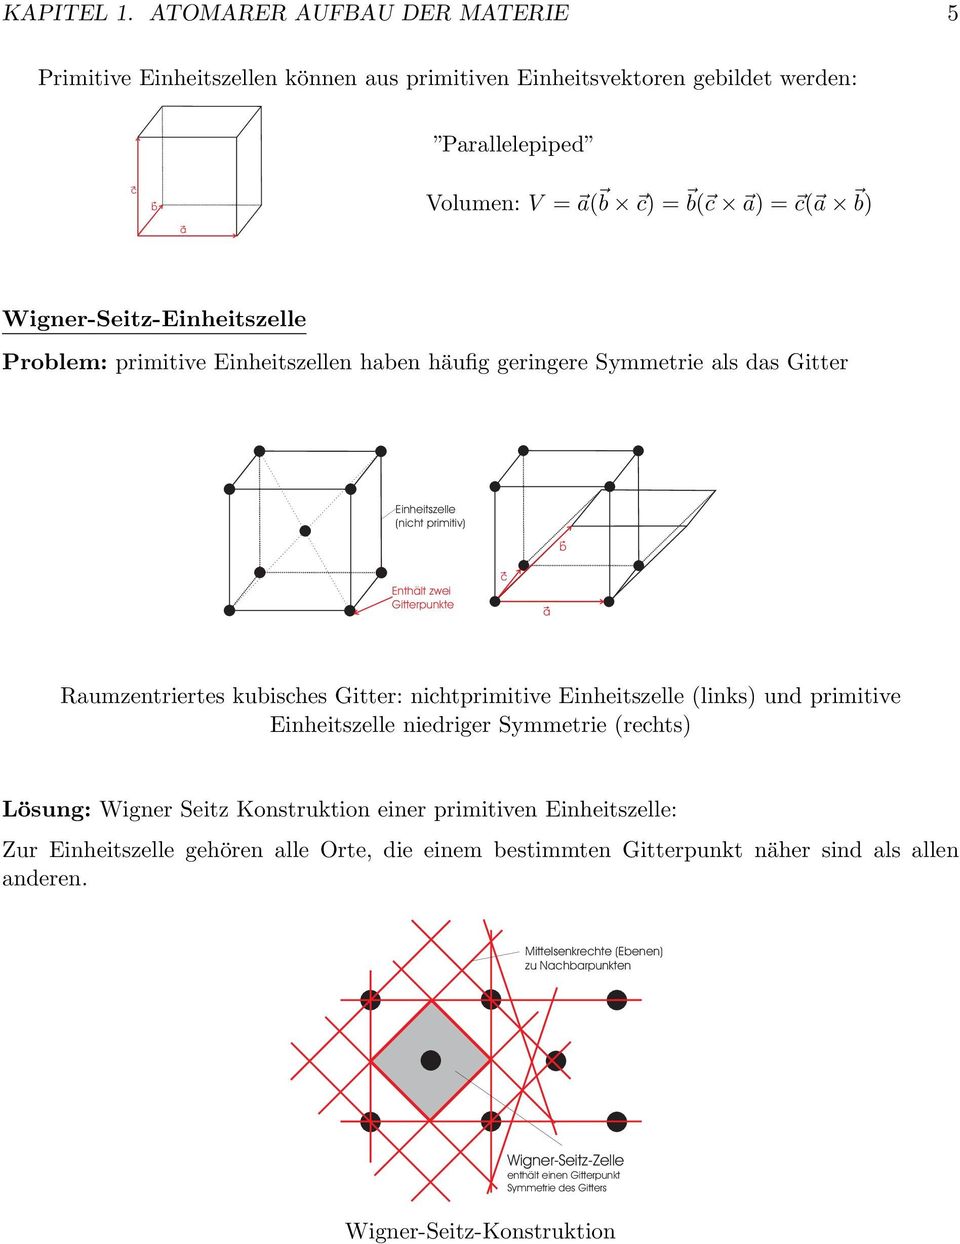 ) = c( b) Wigner-Seitz-inheitszelle Problem: primitive inheitszellen hben häufig geringere Symmetrie ls ds Gitter Rumzentriertes ubisches